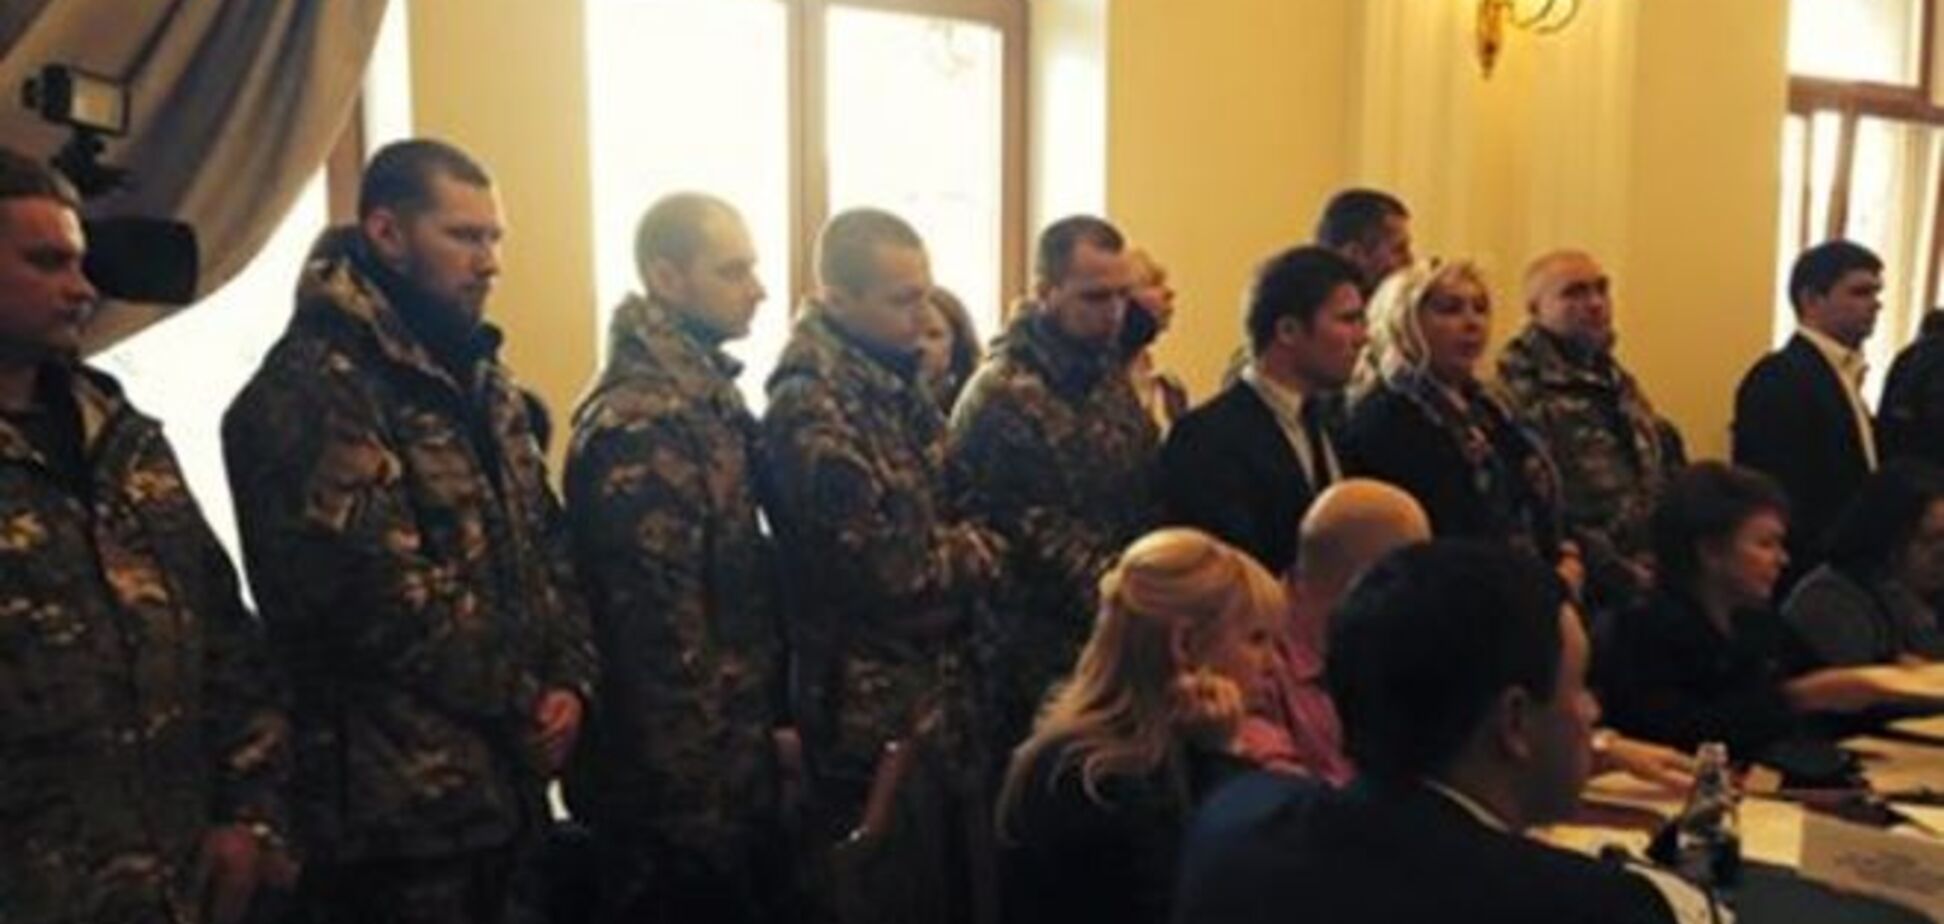 Бойцы батальона Семенченко пришли в Киевсовет для защиты скандального застройщика - активист